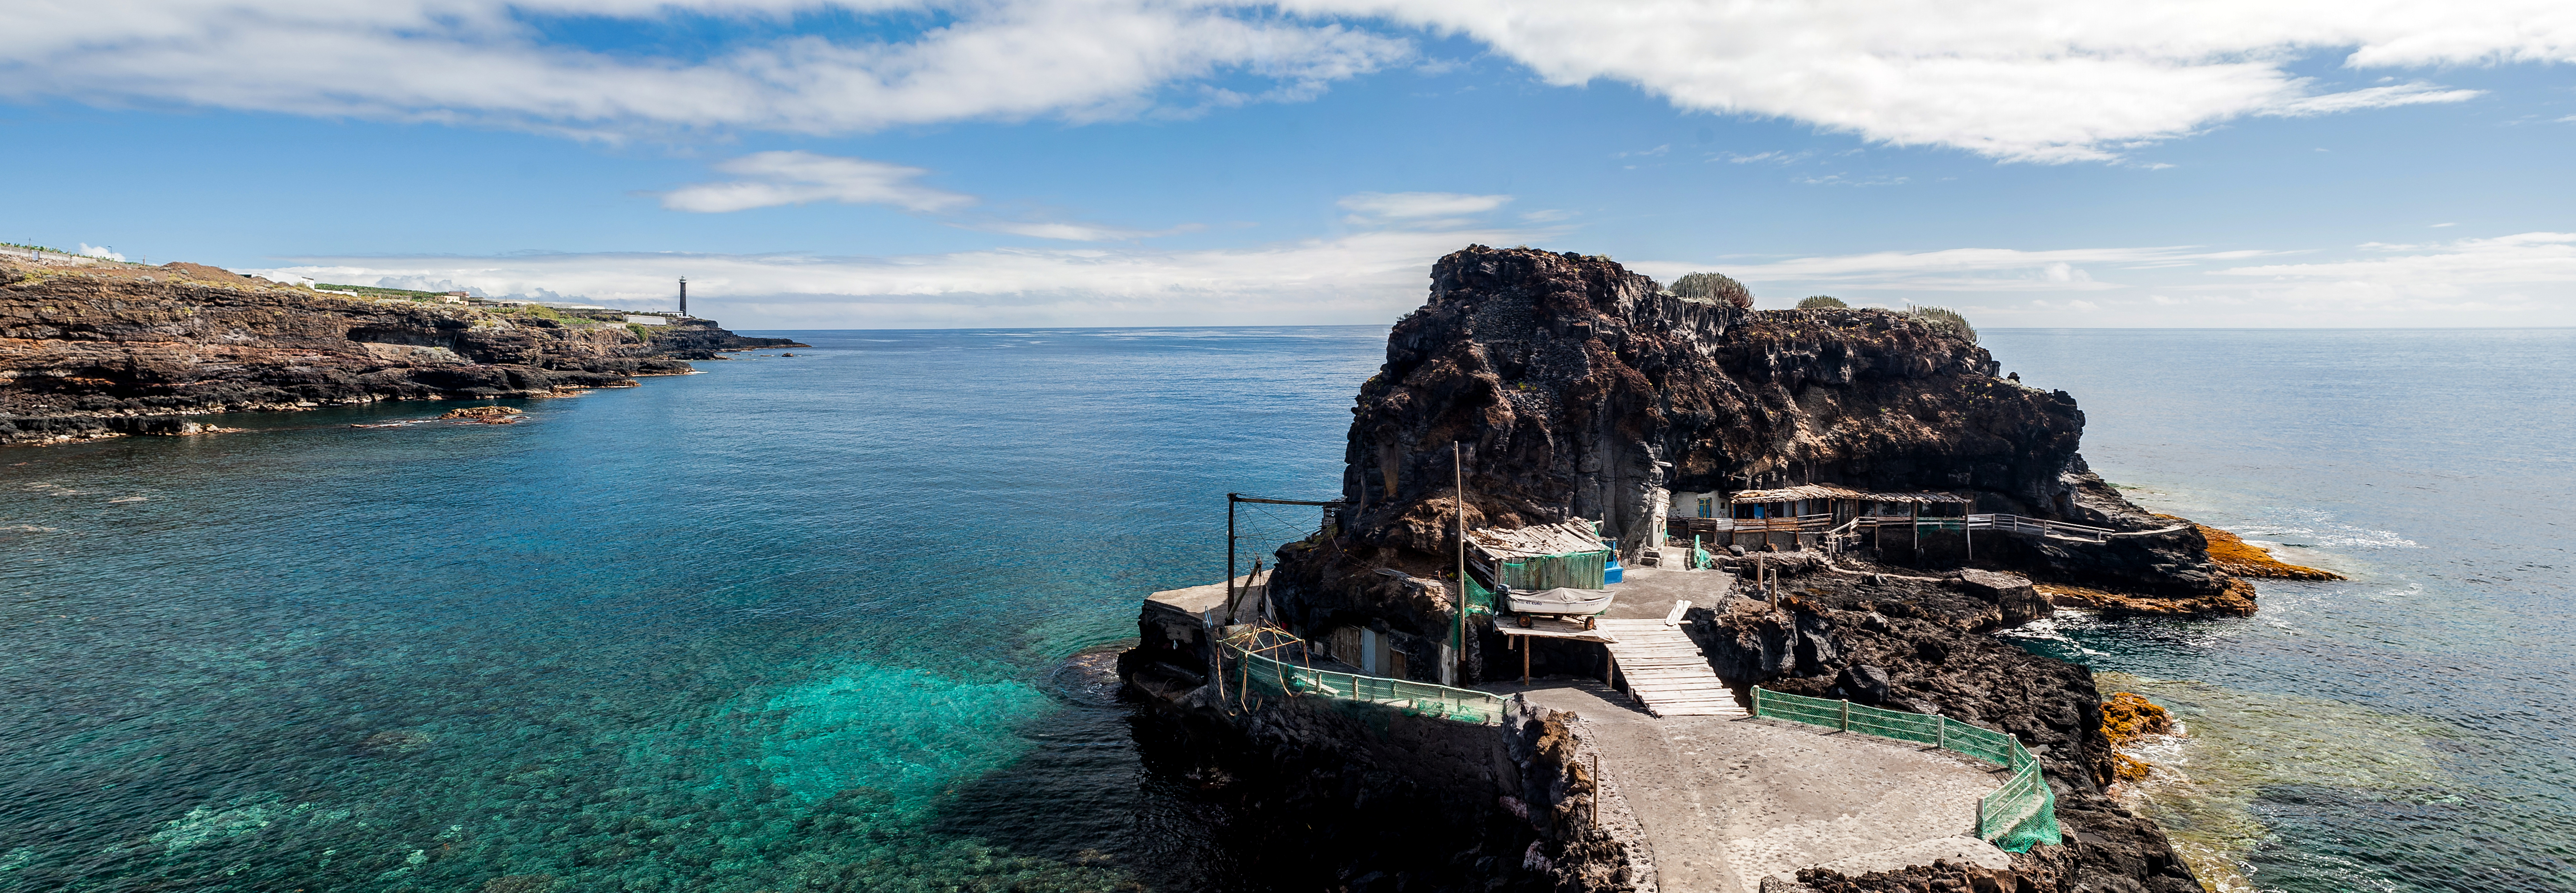 ¿Por qué nos enamora la isla de La Palma? Quizás porque es auténtica (y maravillosa)